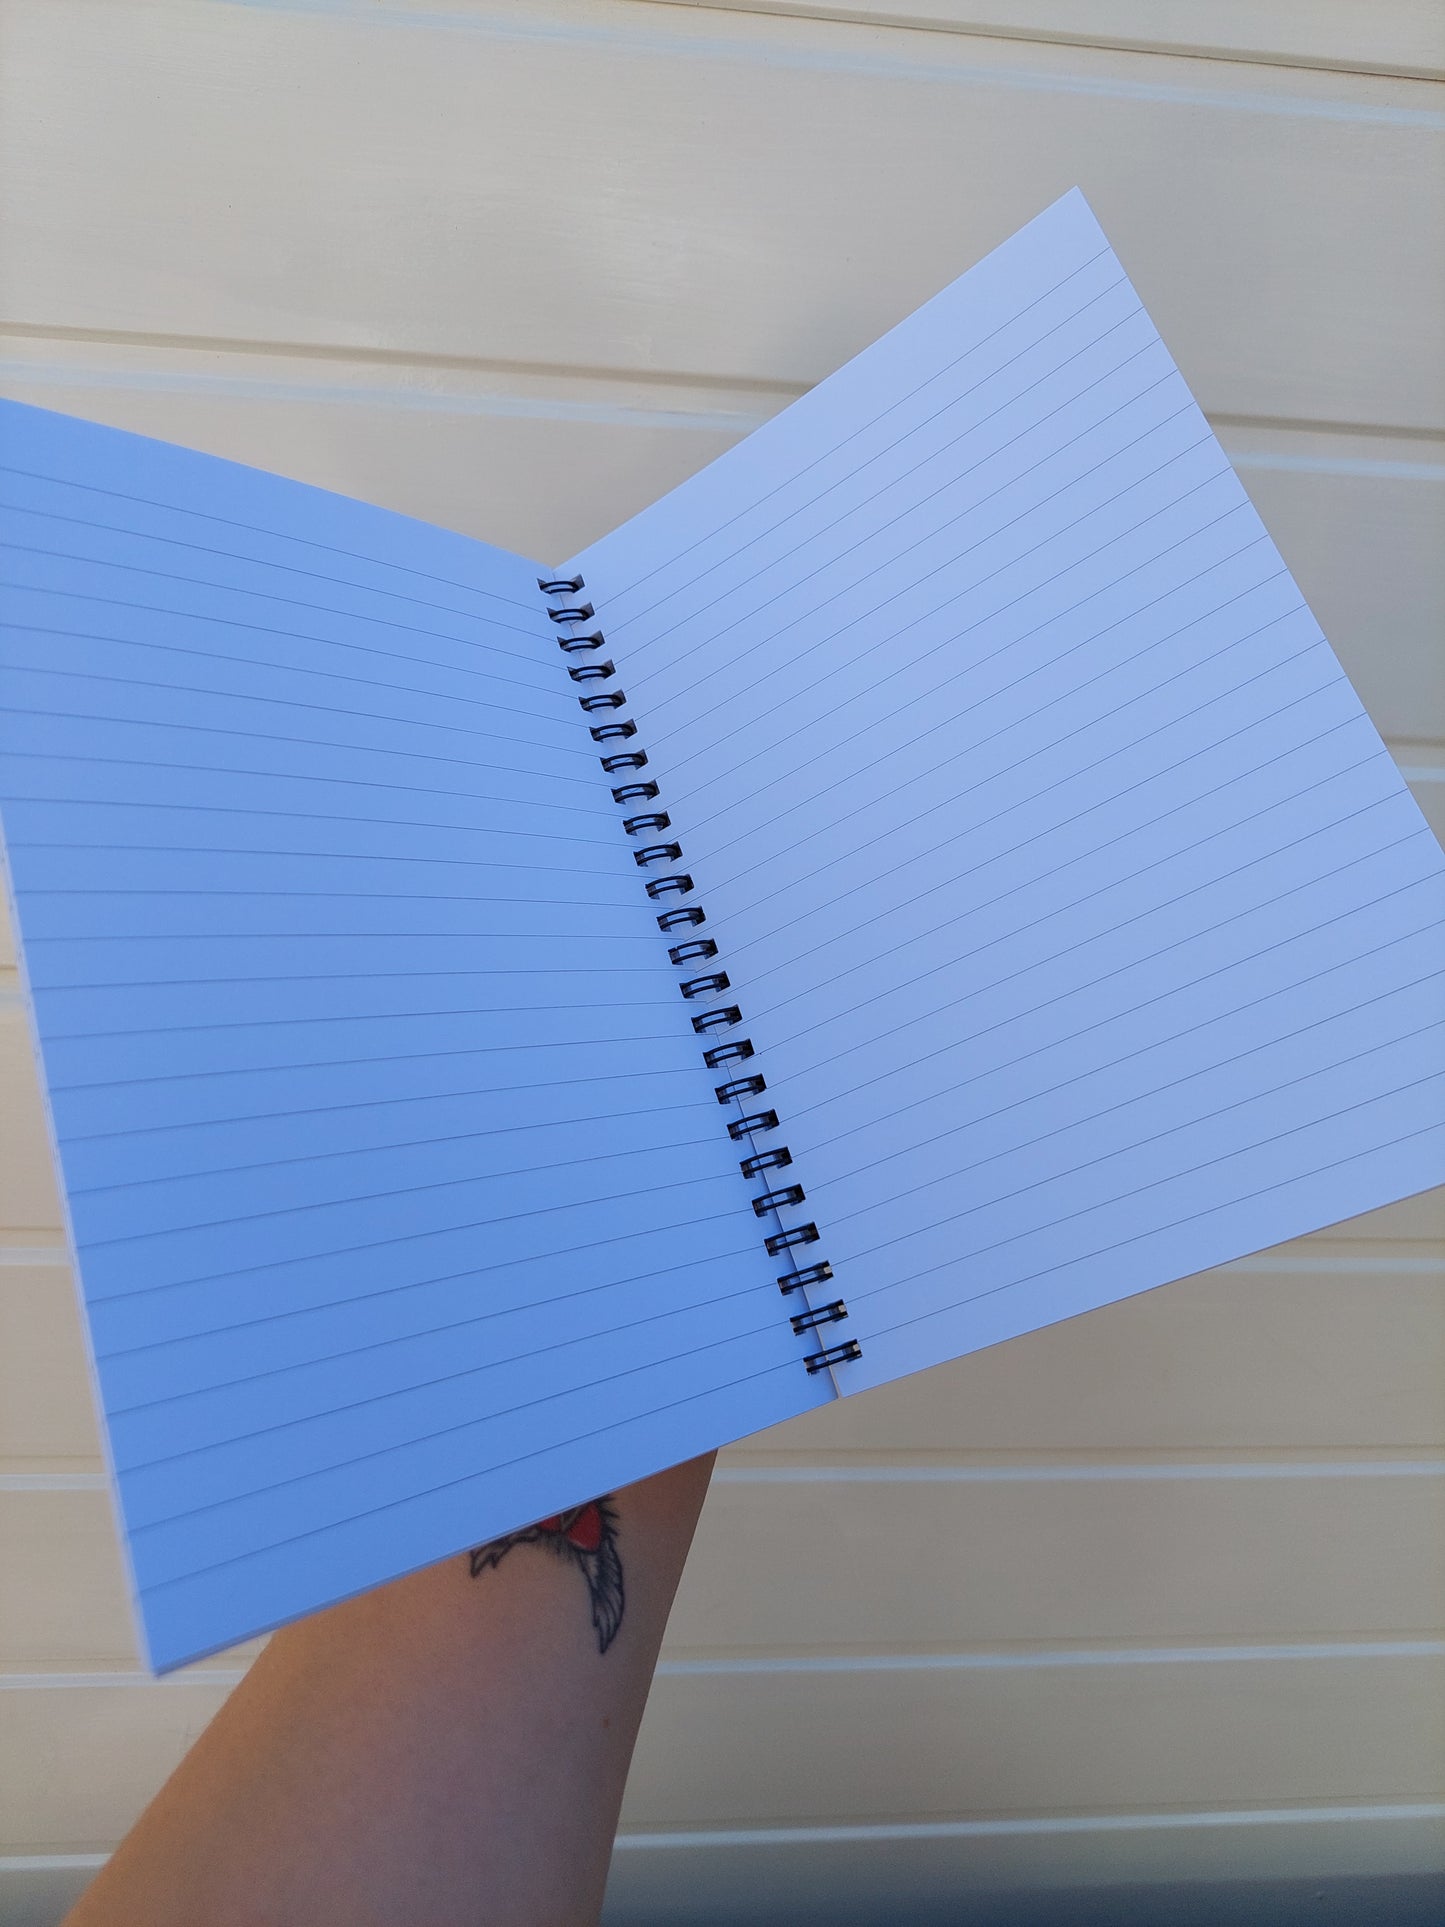 Uni Notebook | University Stationery | Uni Wanker | Funny Notebook